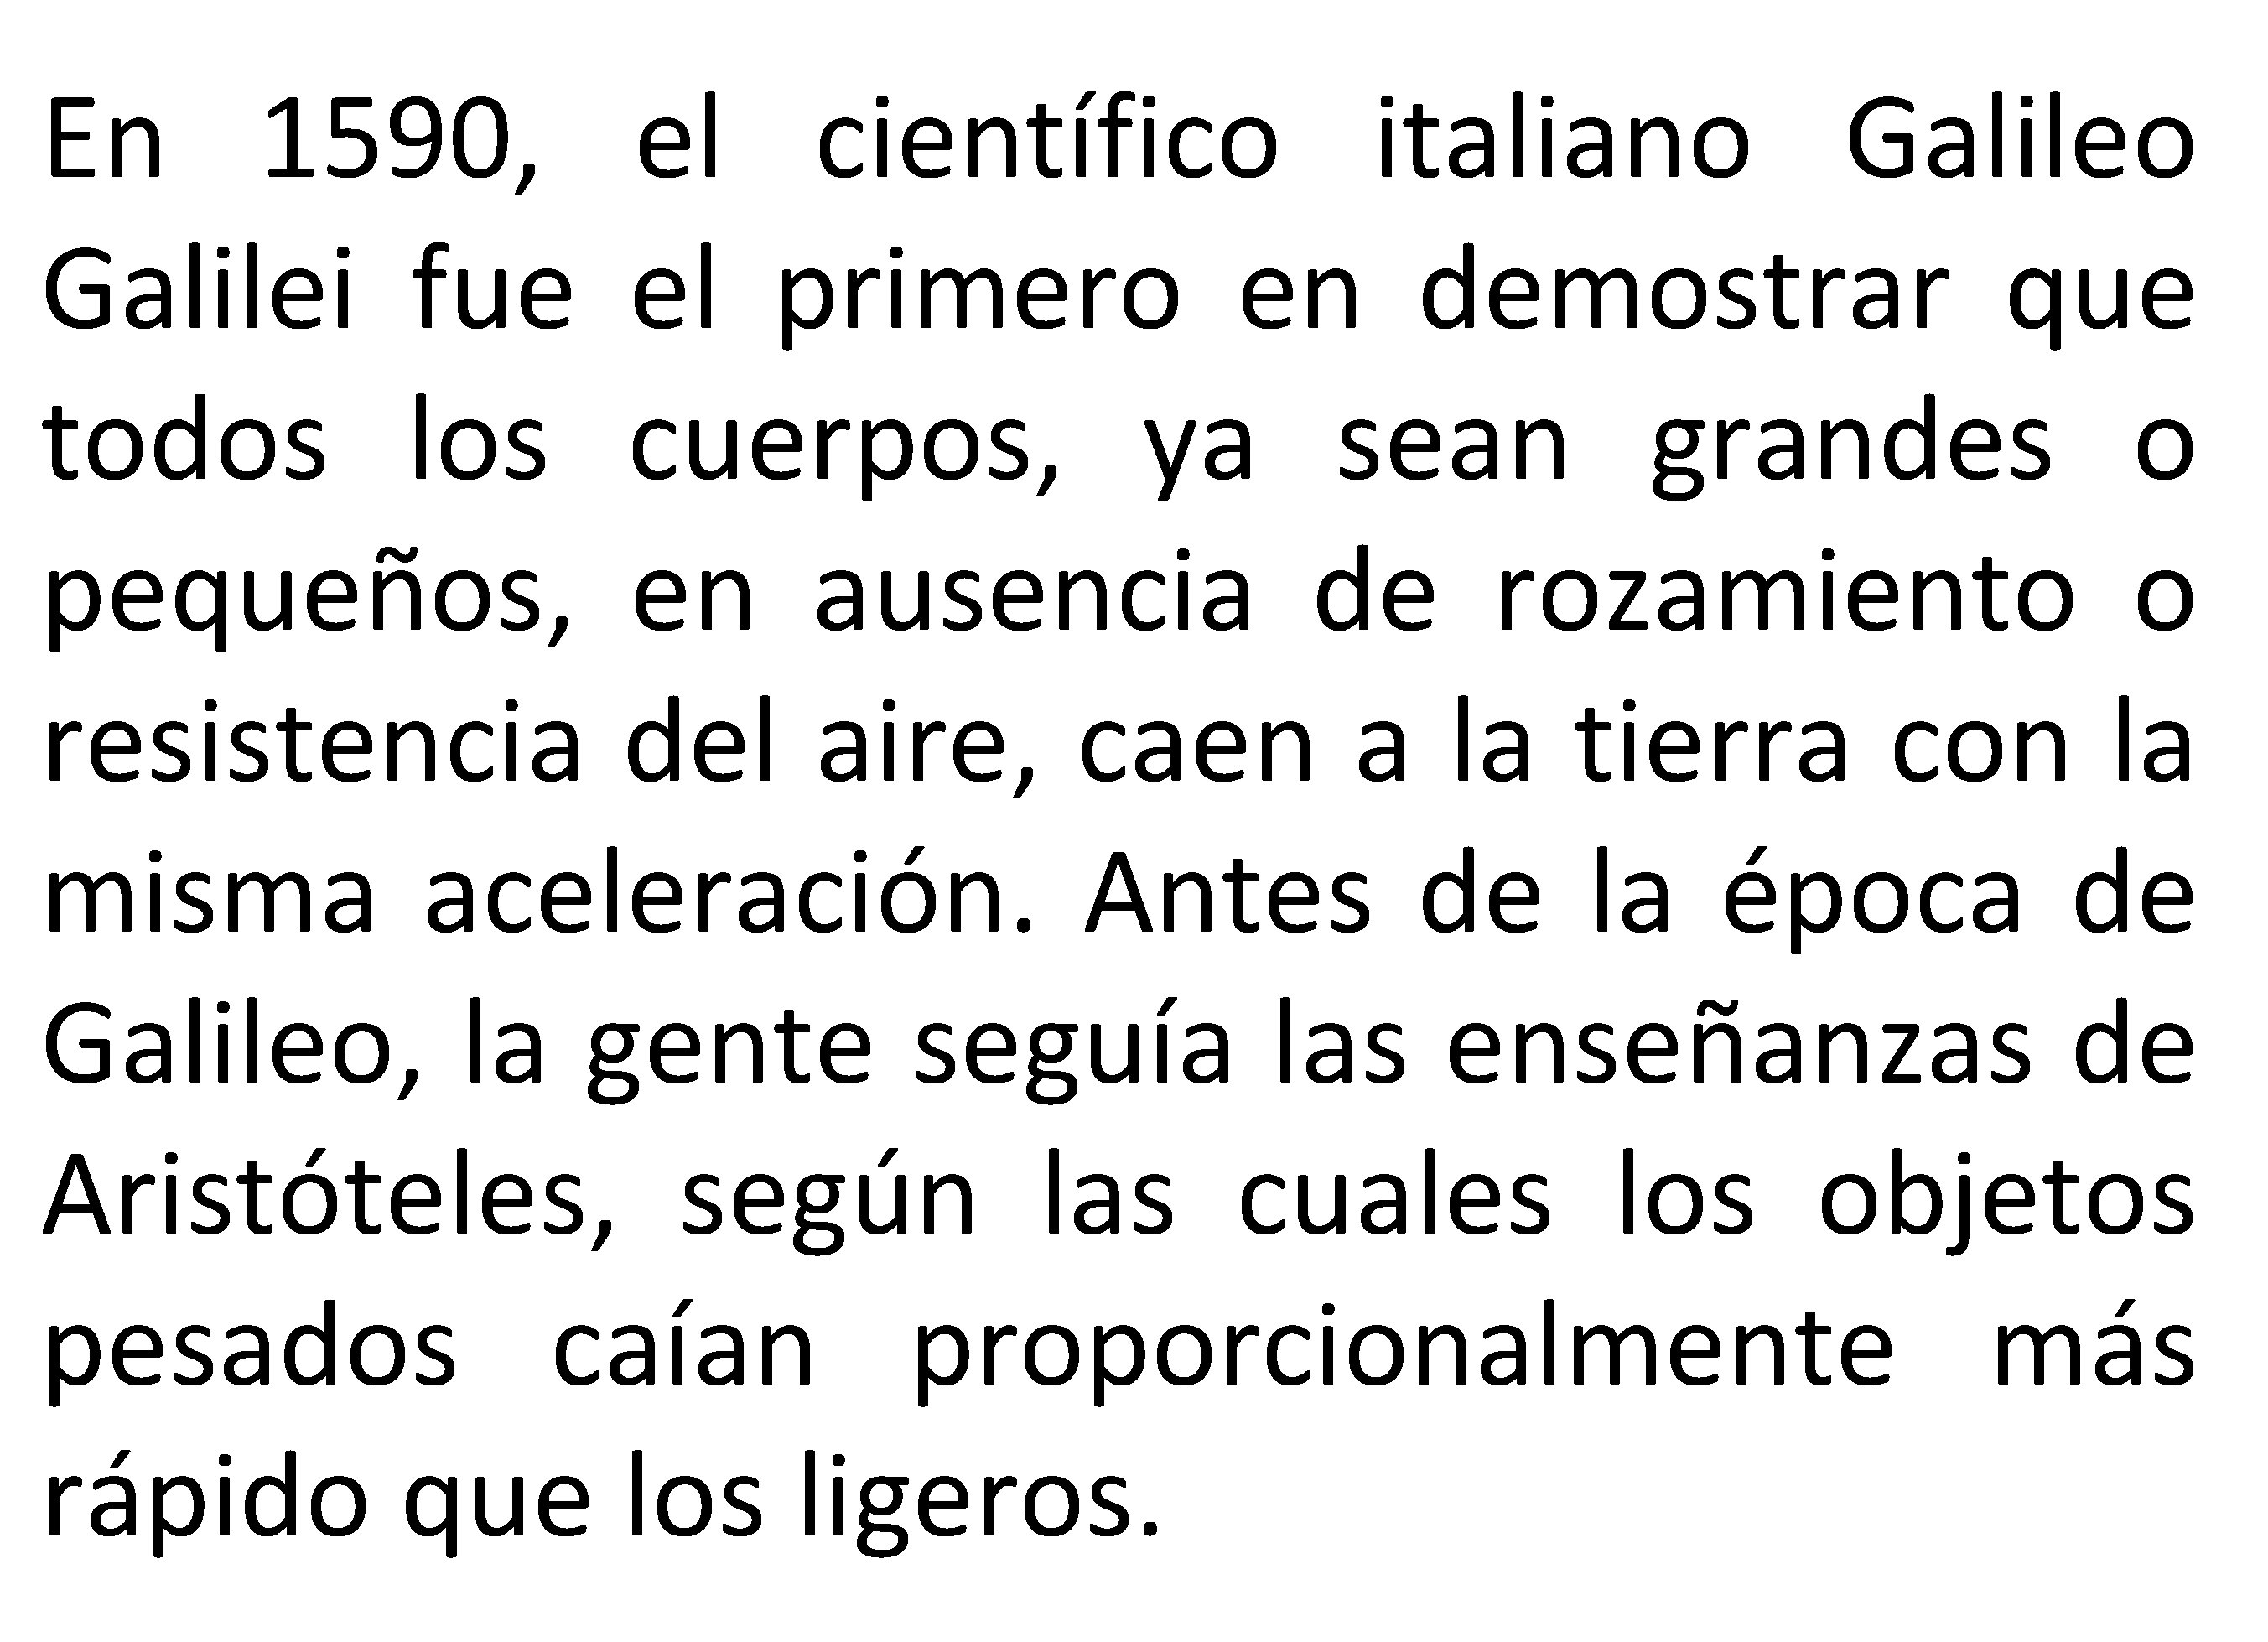 En 1590, el científico italiano Galilei fue el primero en demostrar que todos los